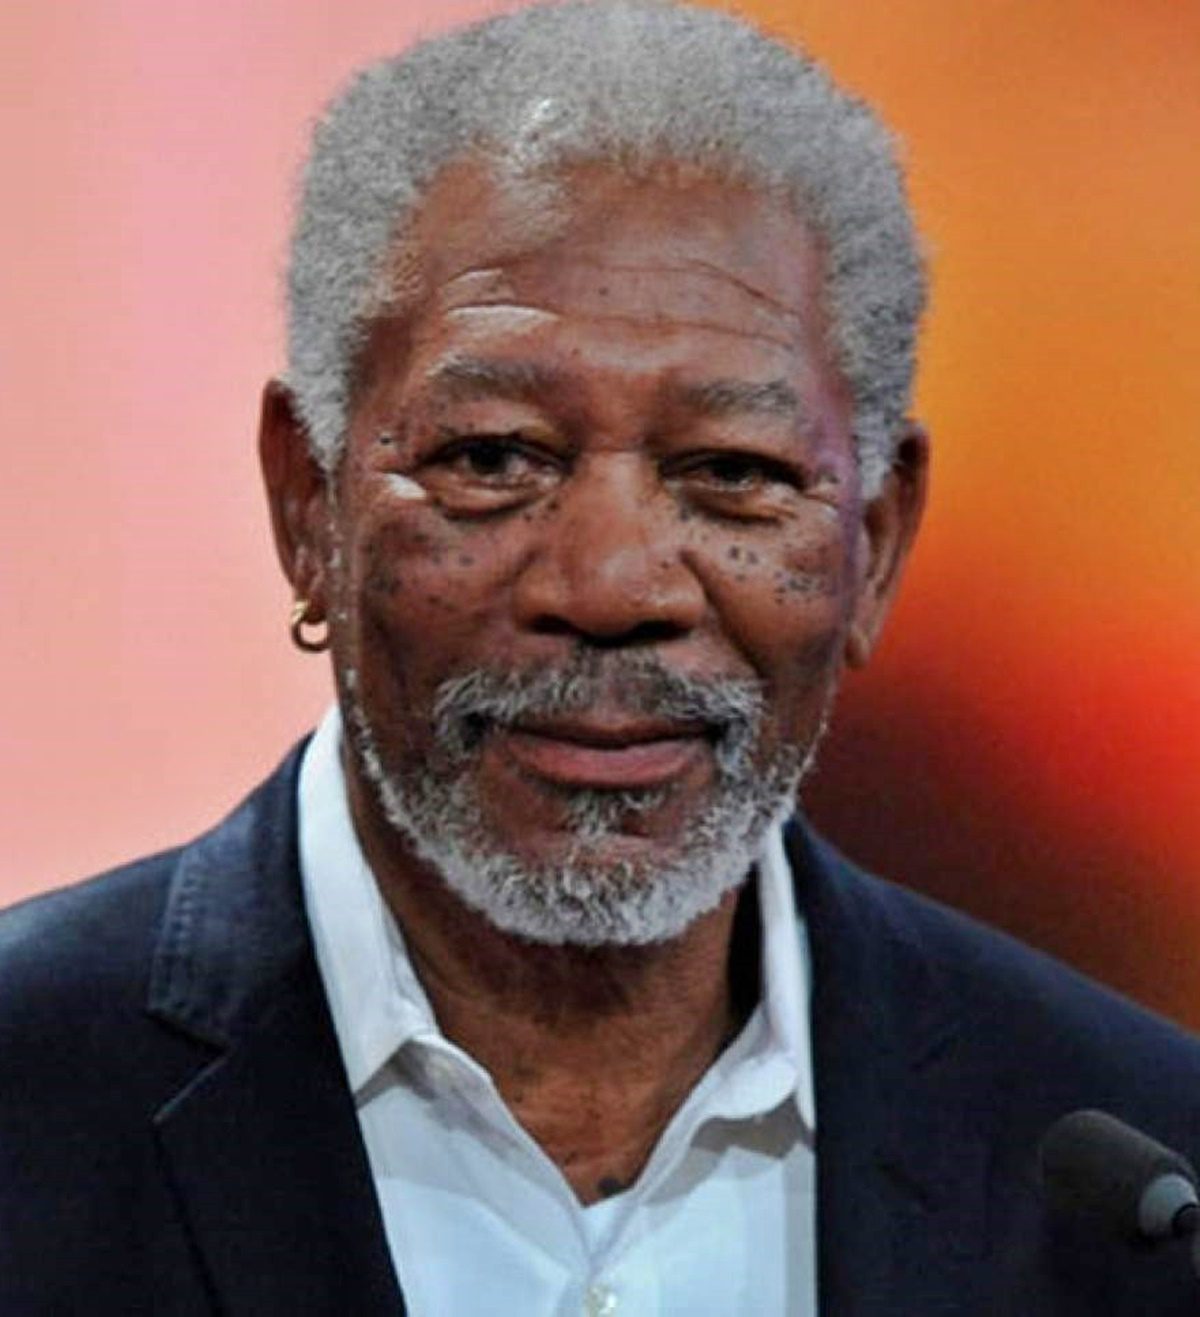 Morgan Freeman elárulta melyik a kedvenc filmje és miért